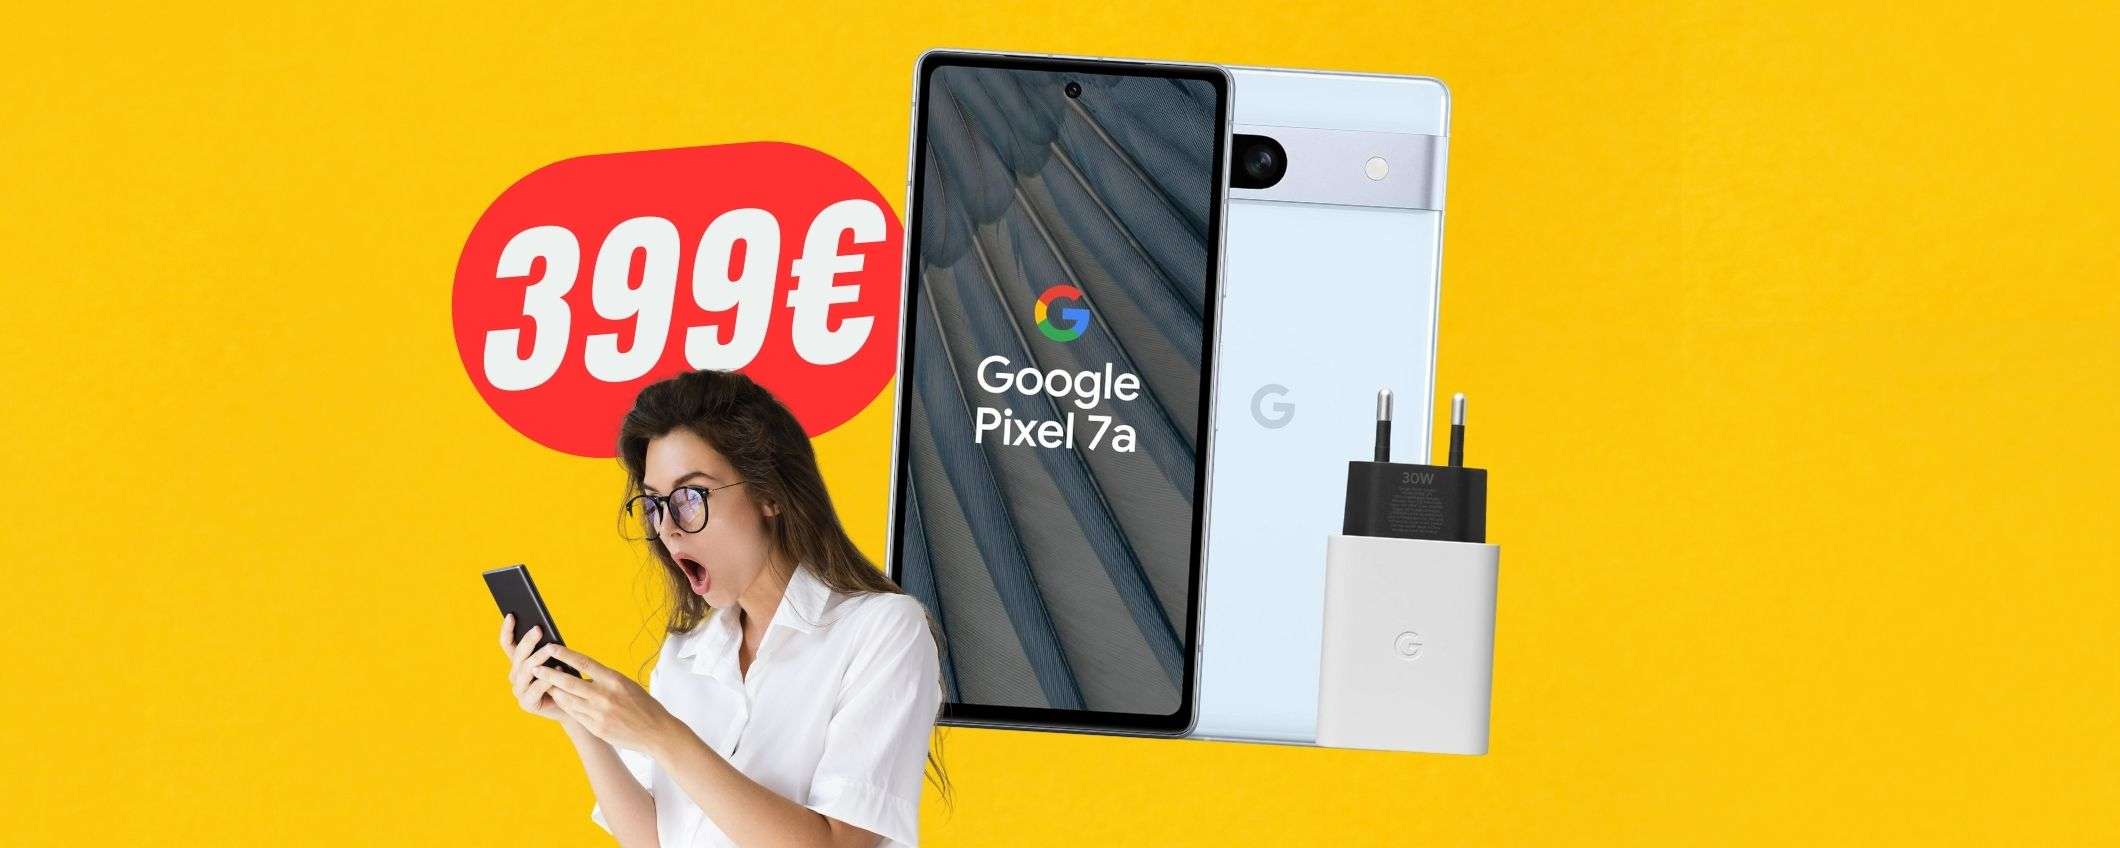 Google Pixel 7a (con caricatore) a 399€ è una BOMBA!